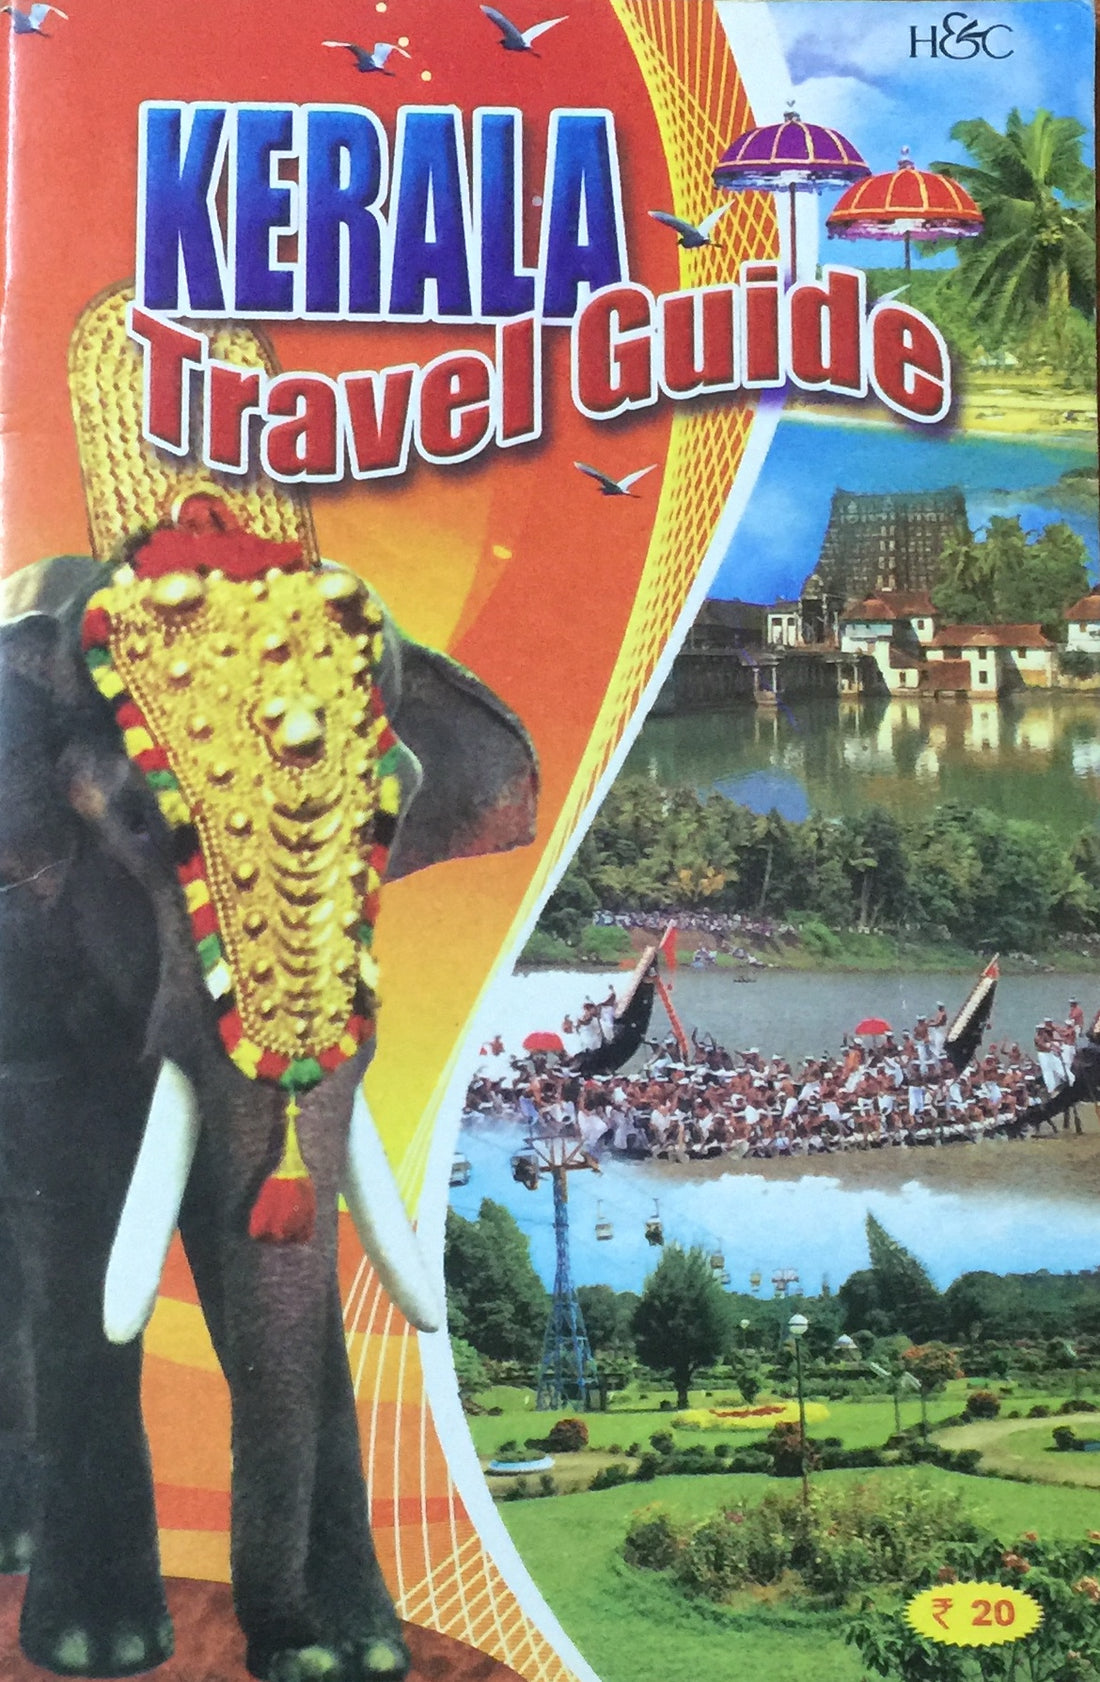 kerala travel guide book